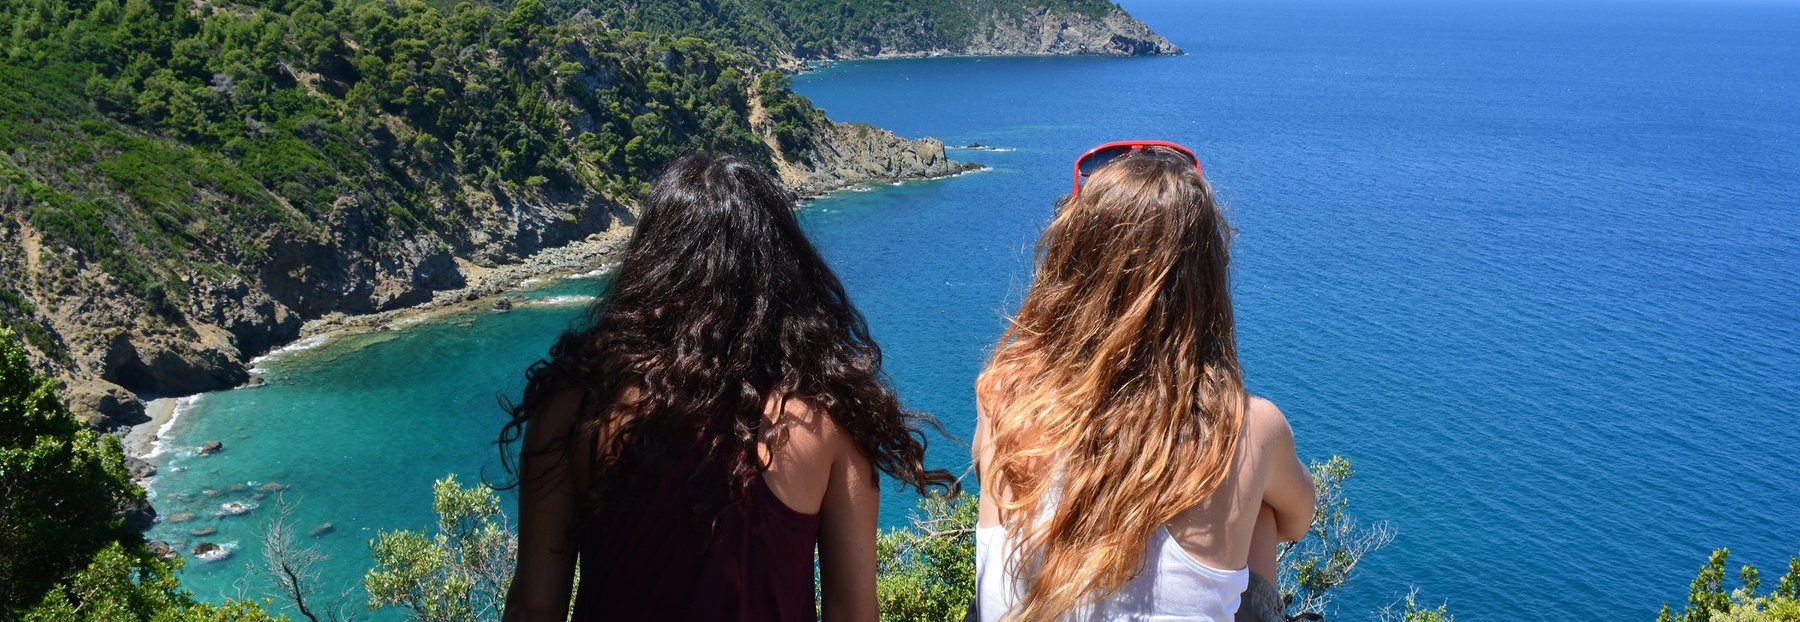 Griechenland mit Jugendlichen - Griechenland Family & Teens - Expeditionsreise Mittelmeer